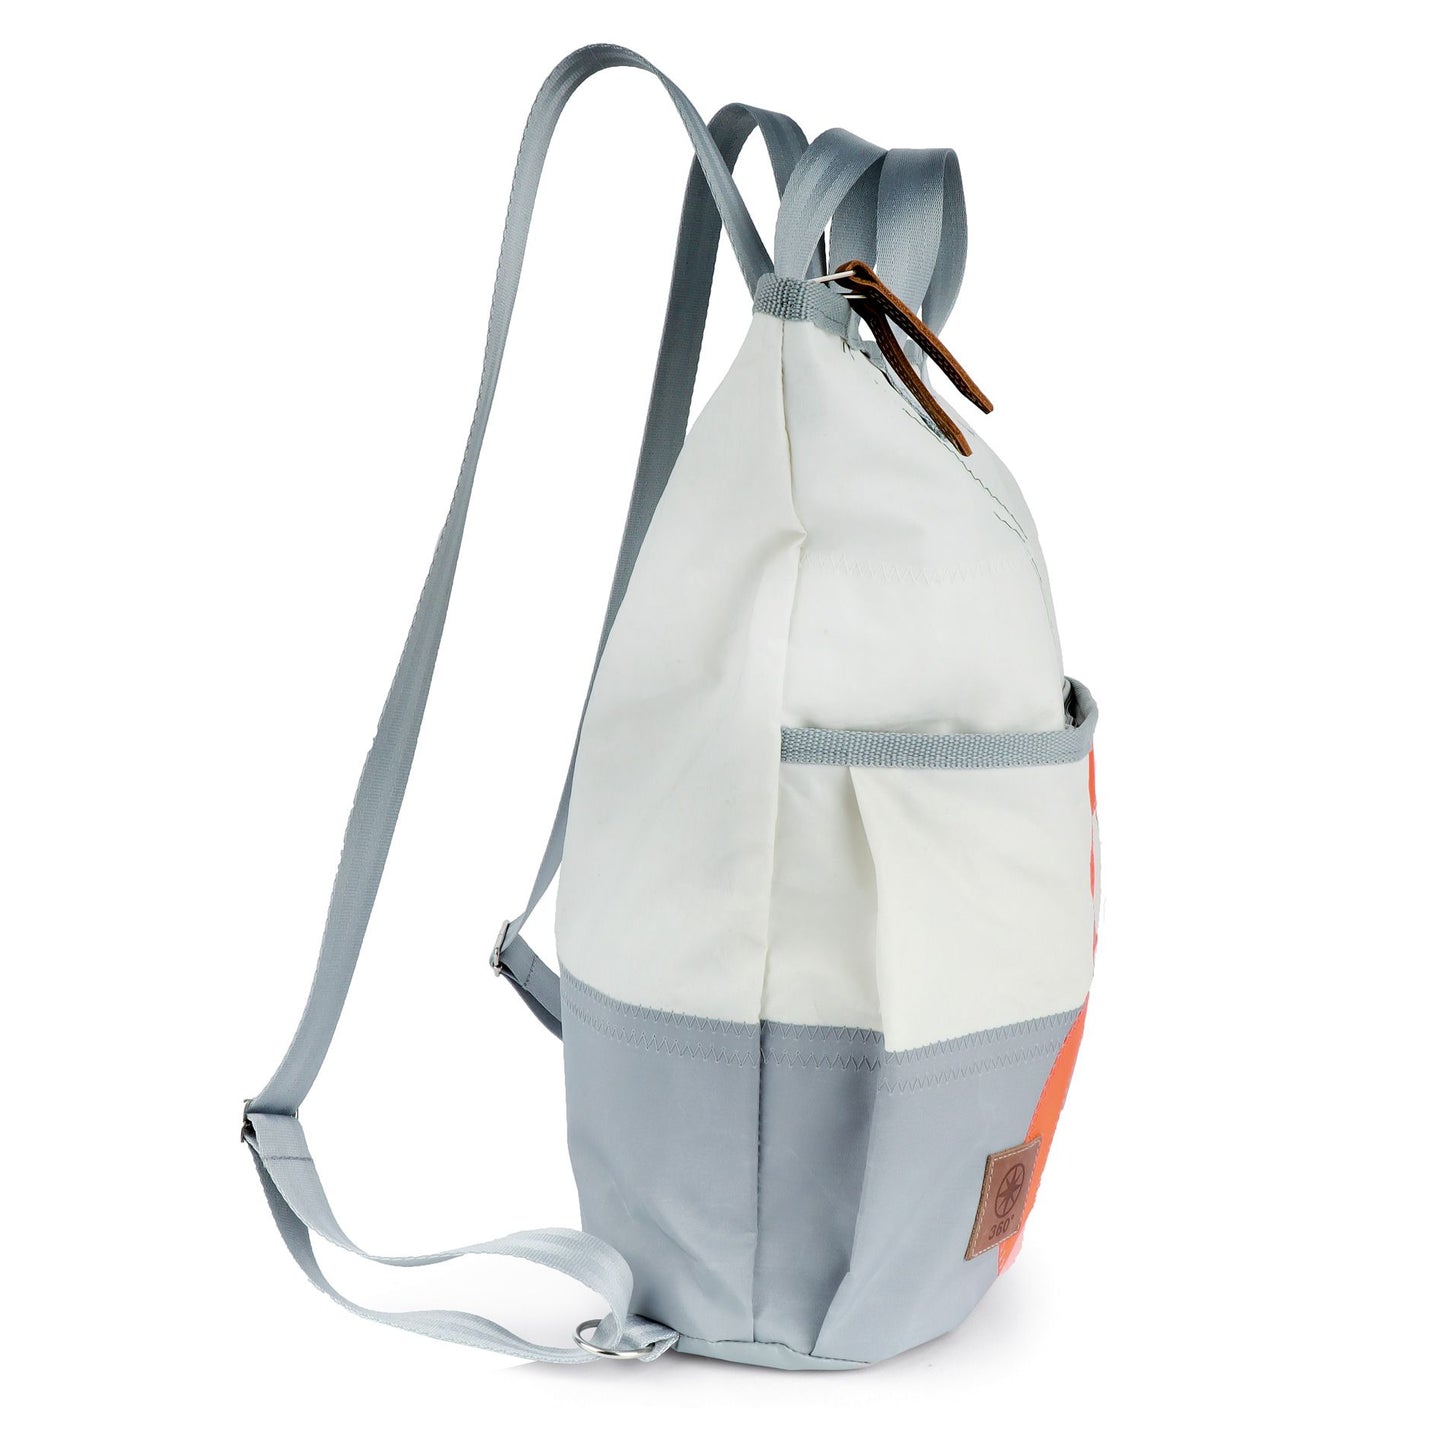 Einkaufstasche Tasche 360 Grad "Ketsch Mini" / Segeltuch weiß grau / Motiv Zufallszahl orange